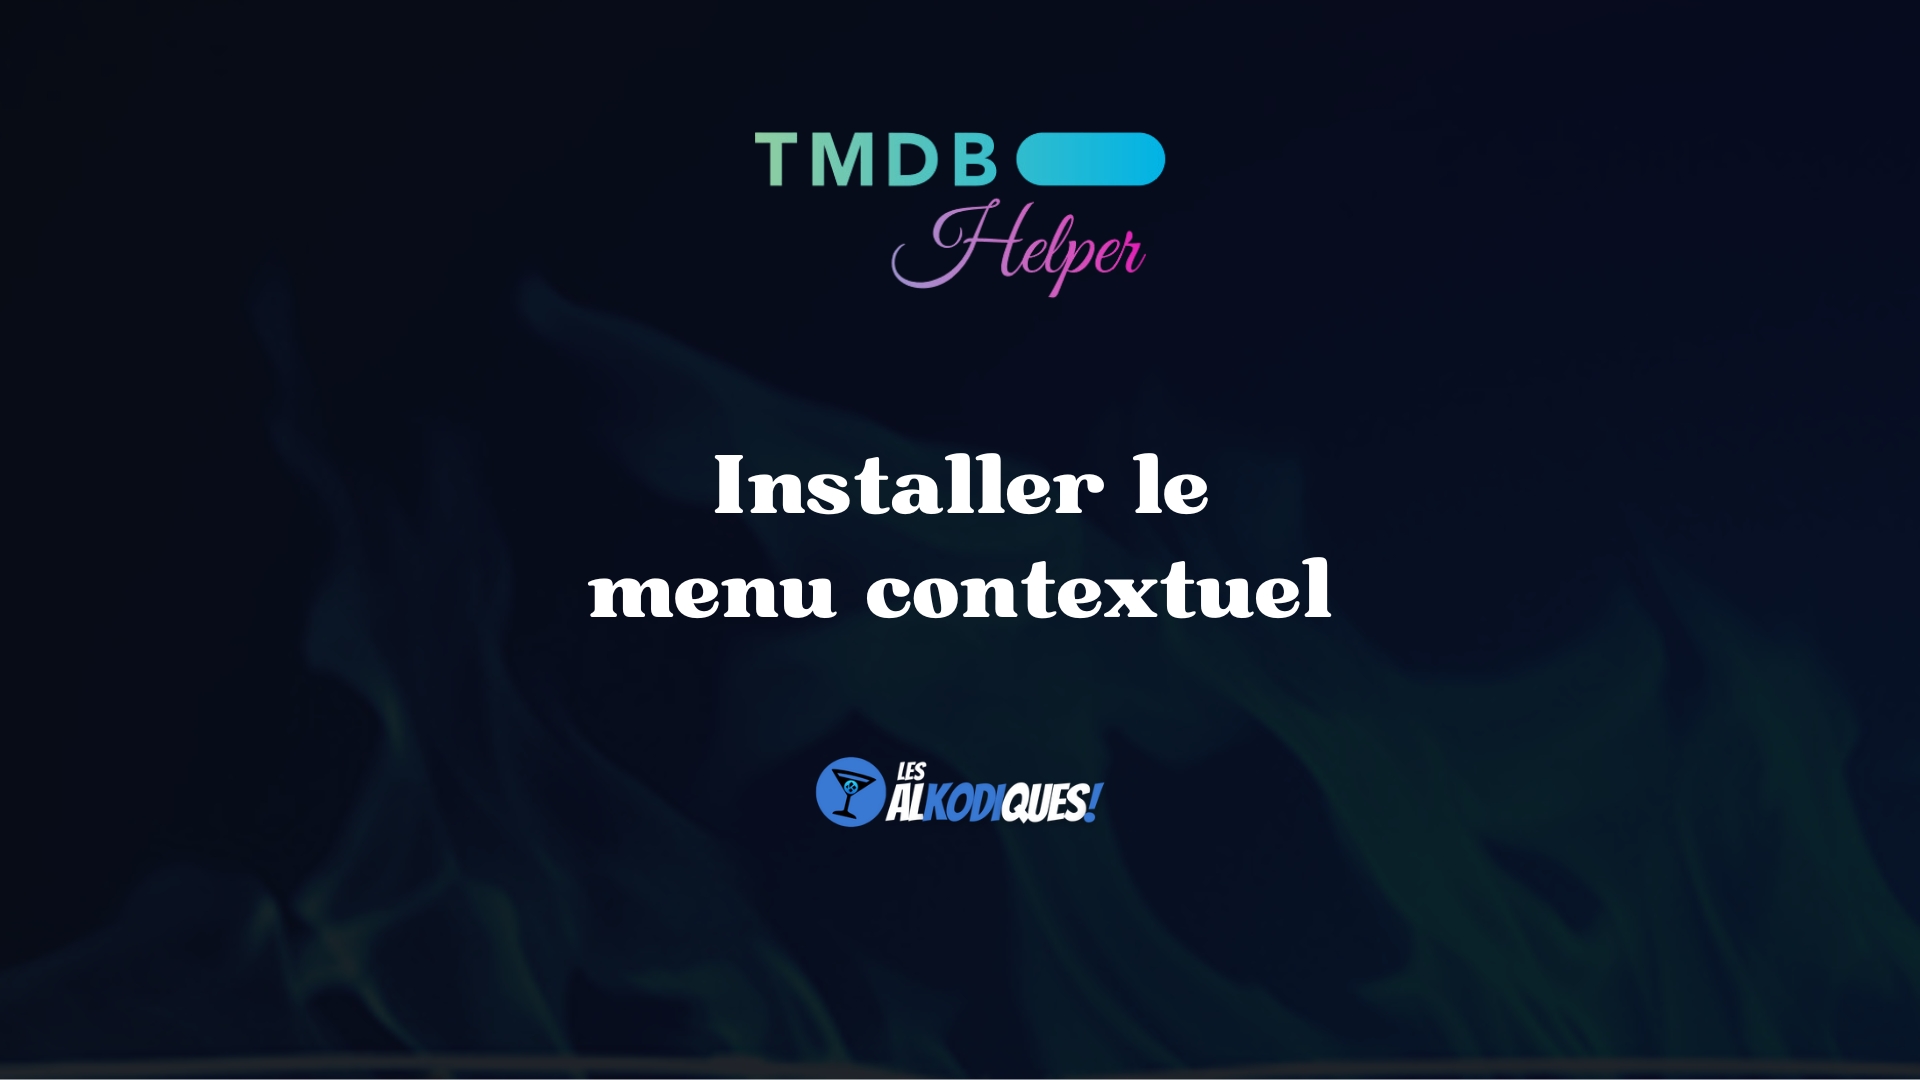 installer le menu contextuel tmdbh